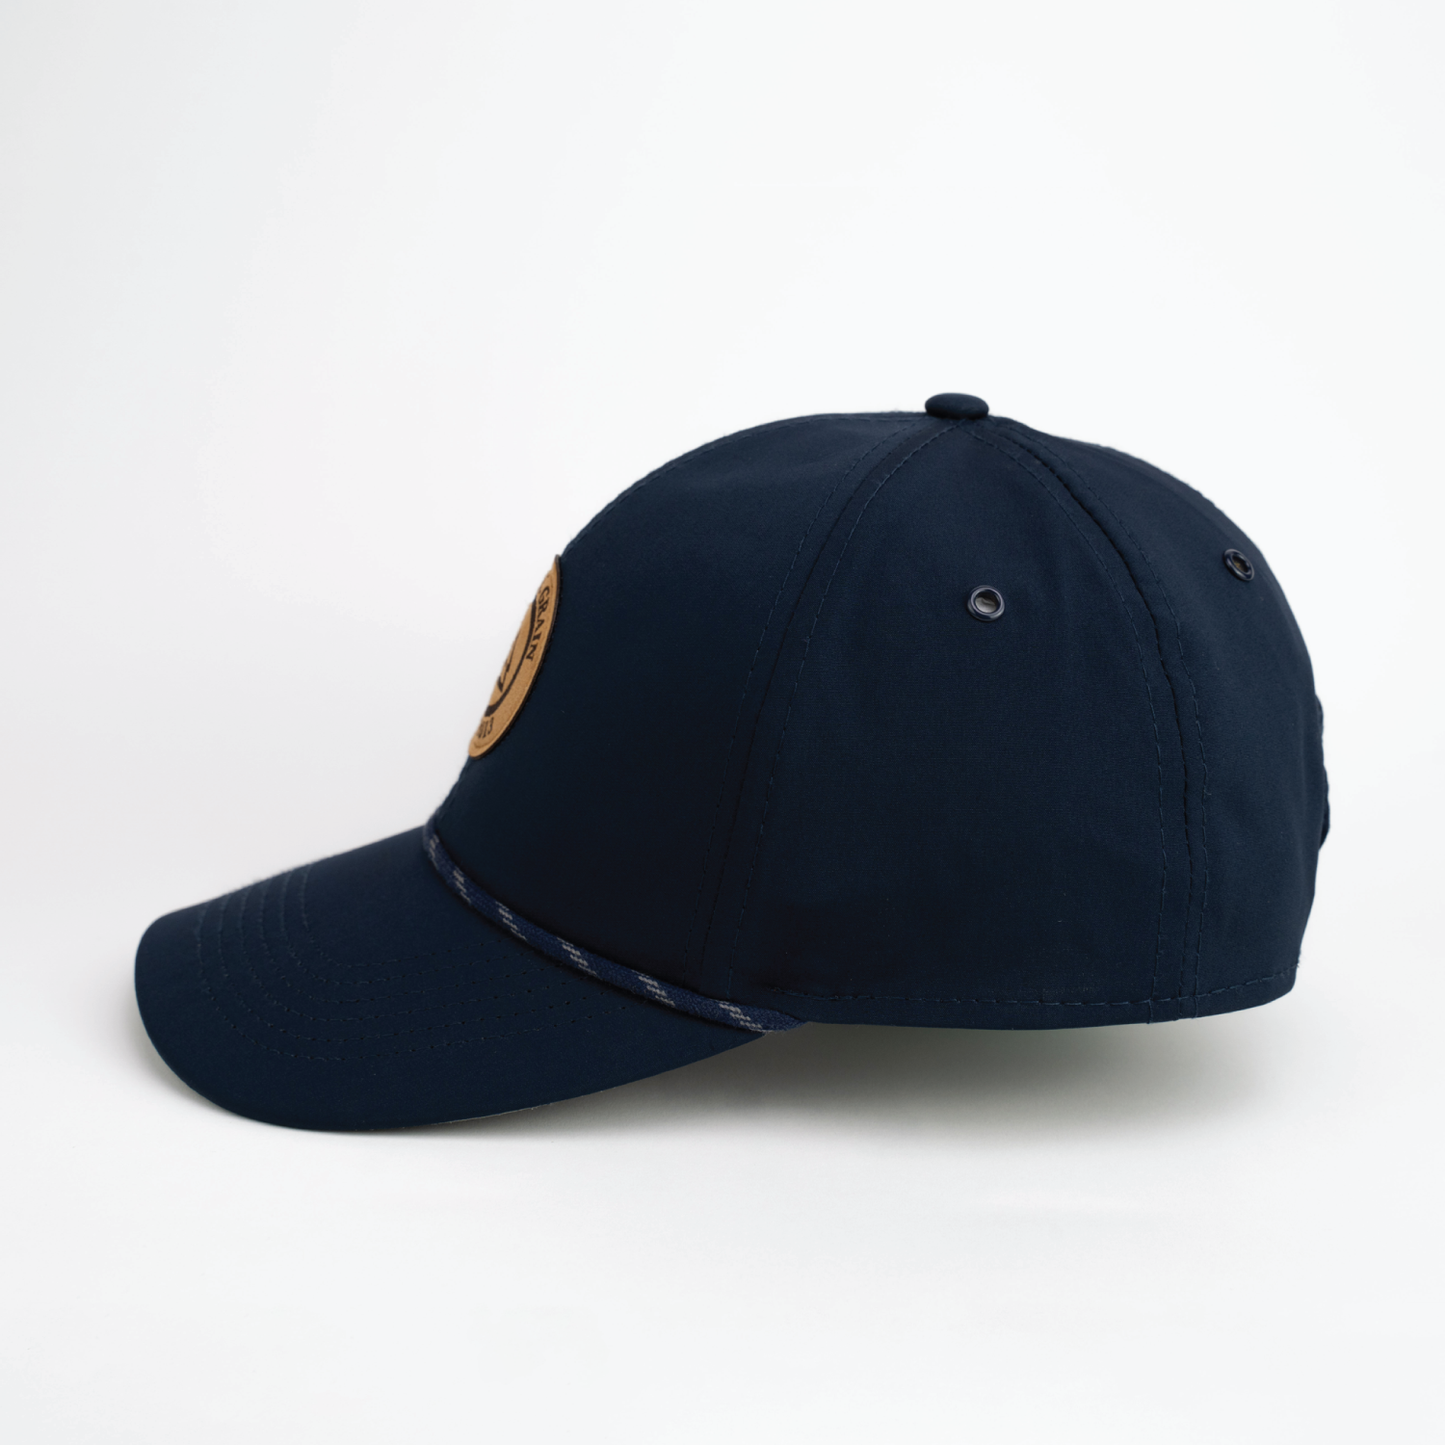 Navy & Tan Suede Original Grain Hat